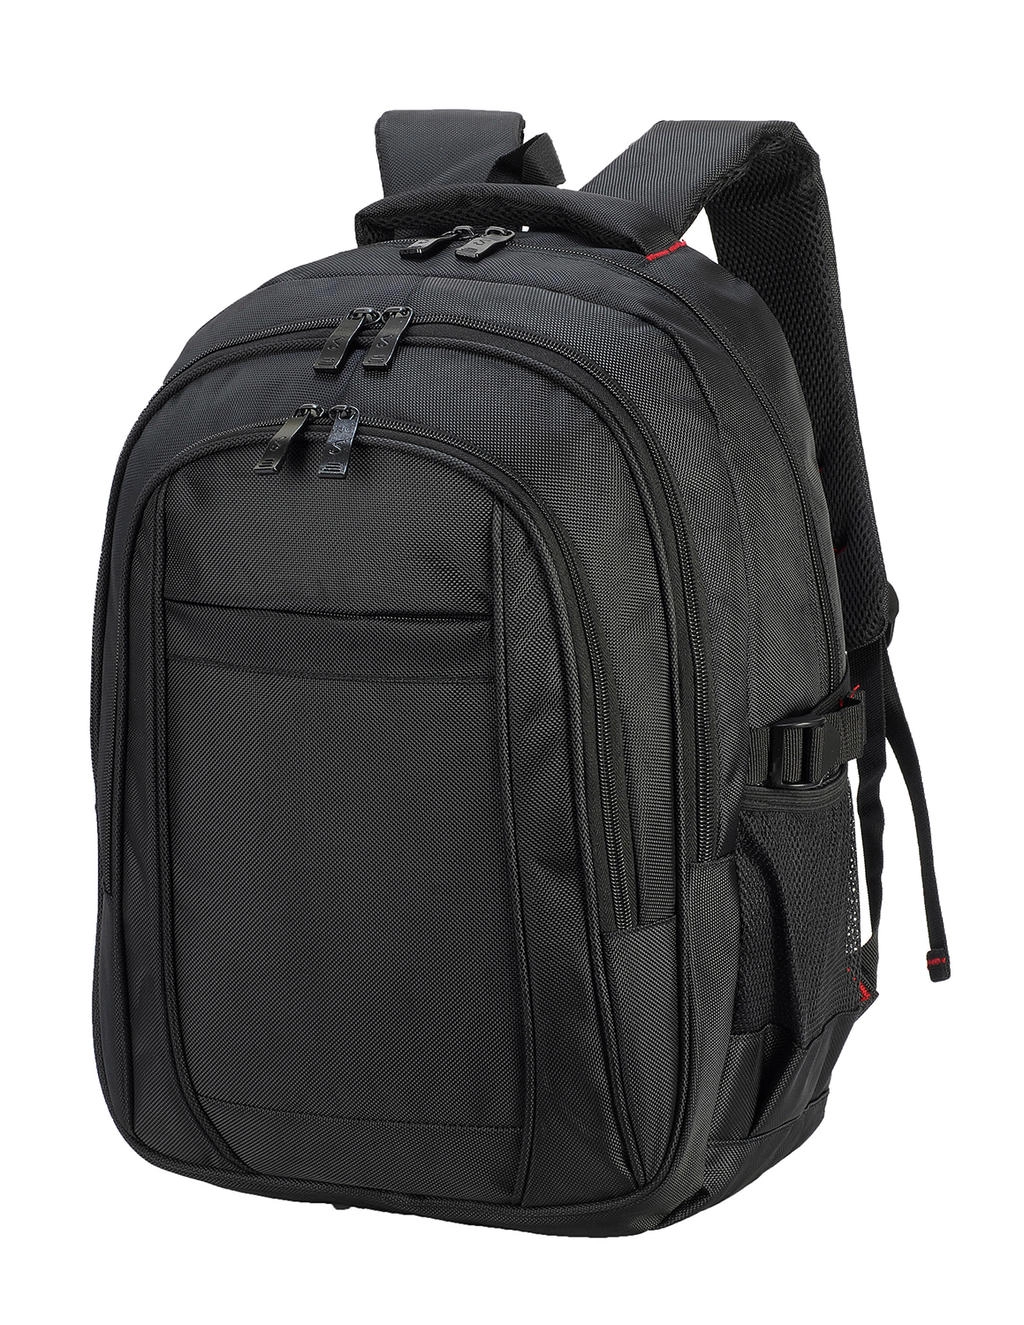 Stuttgart Laptop Backpack zum Besticken und Bedrucken in der Farbe Black mit Ihren Logo, Schriftzug oder Motiv.